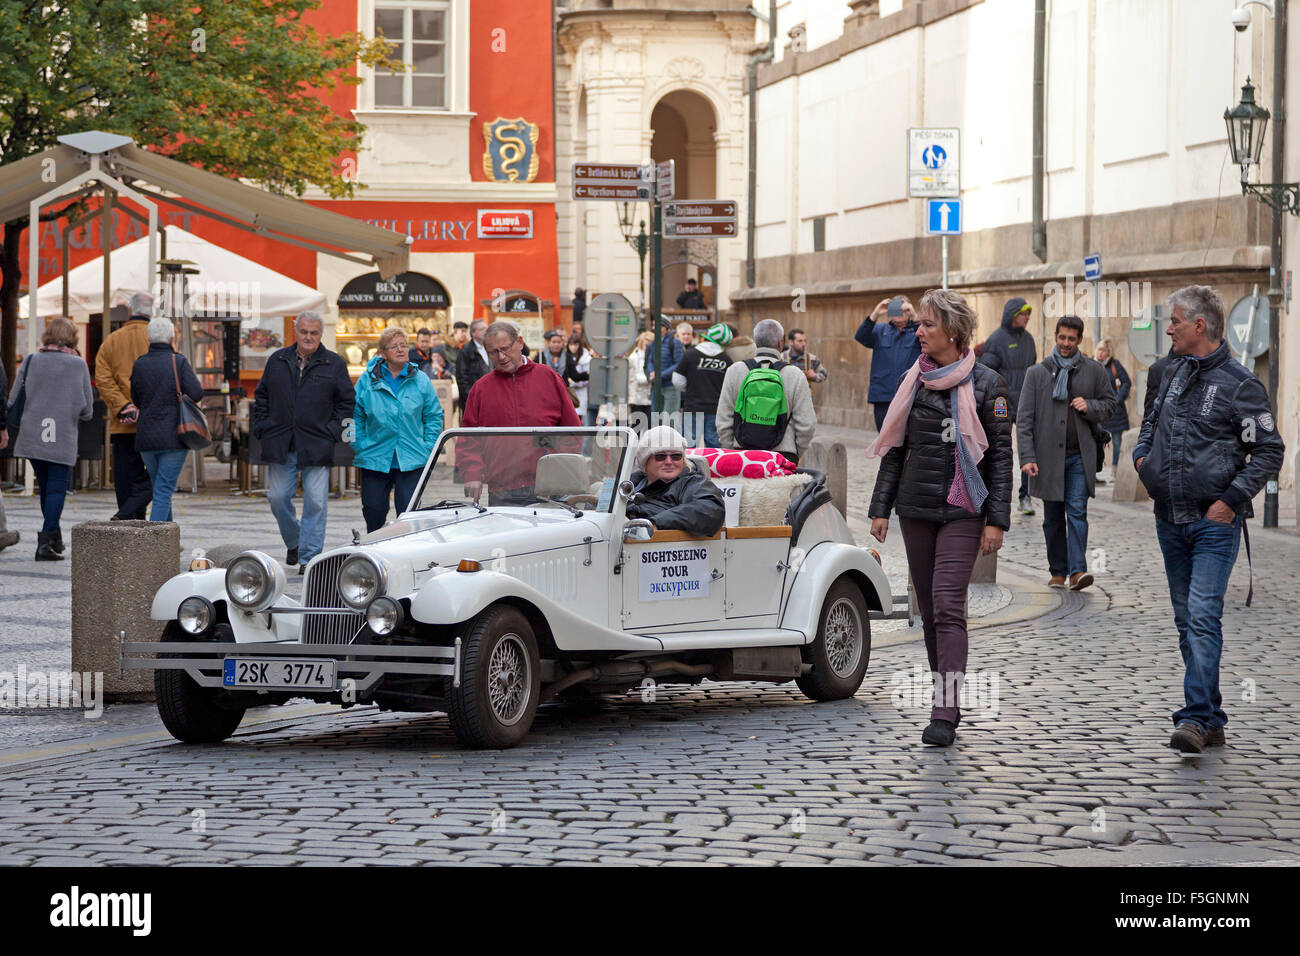 city tour in a vintage car, Old Town, Prague, Czech Republic Stock Photo